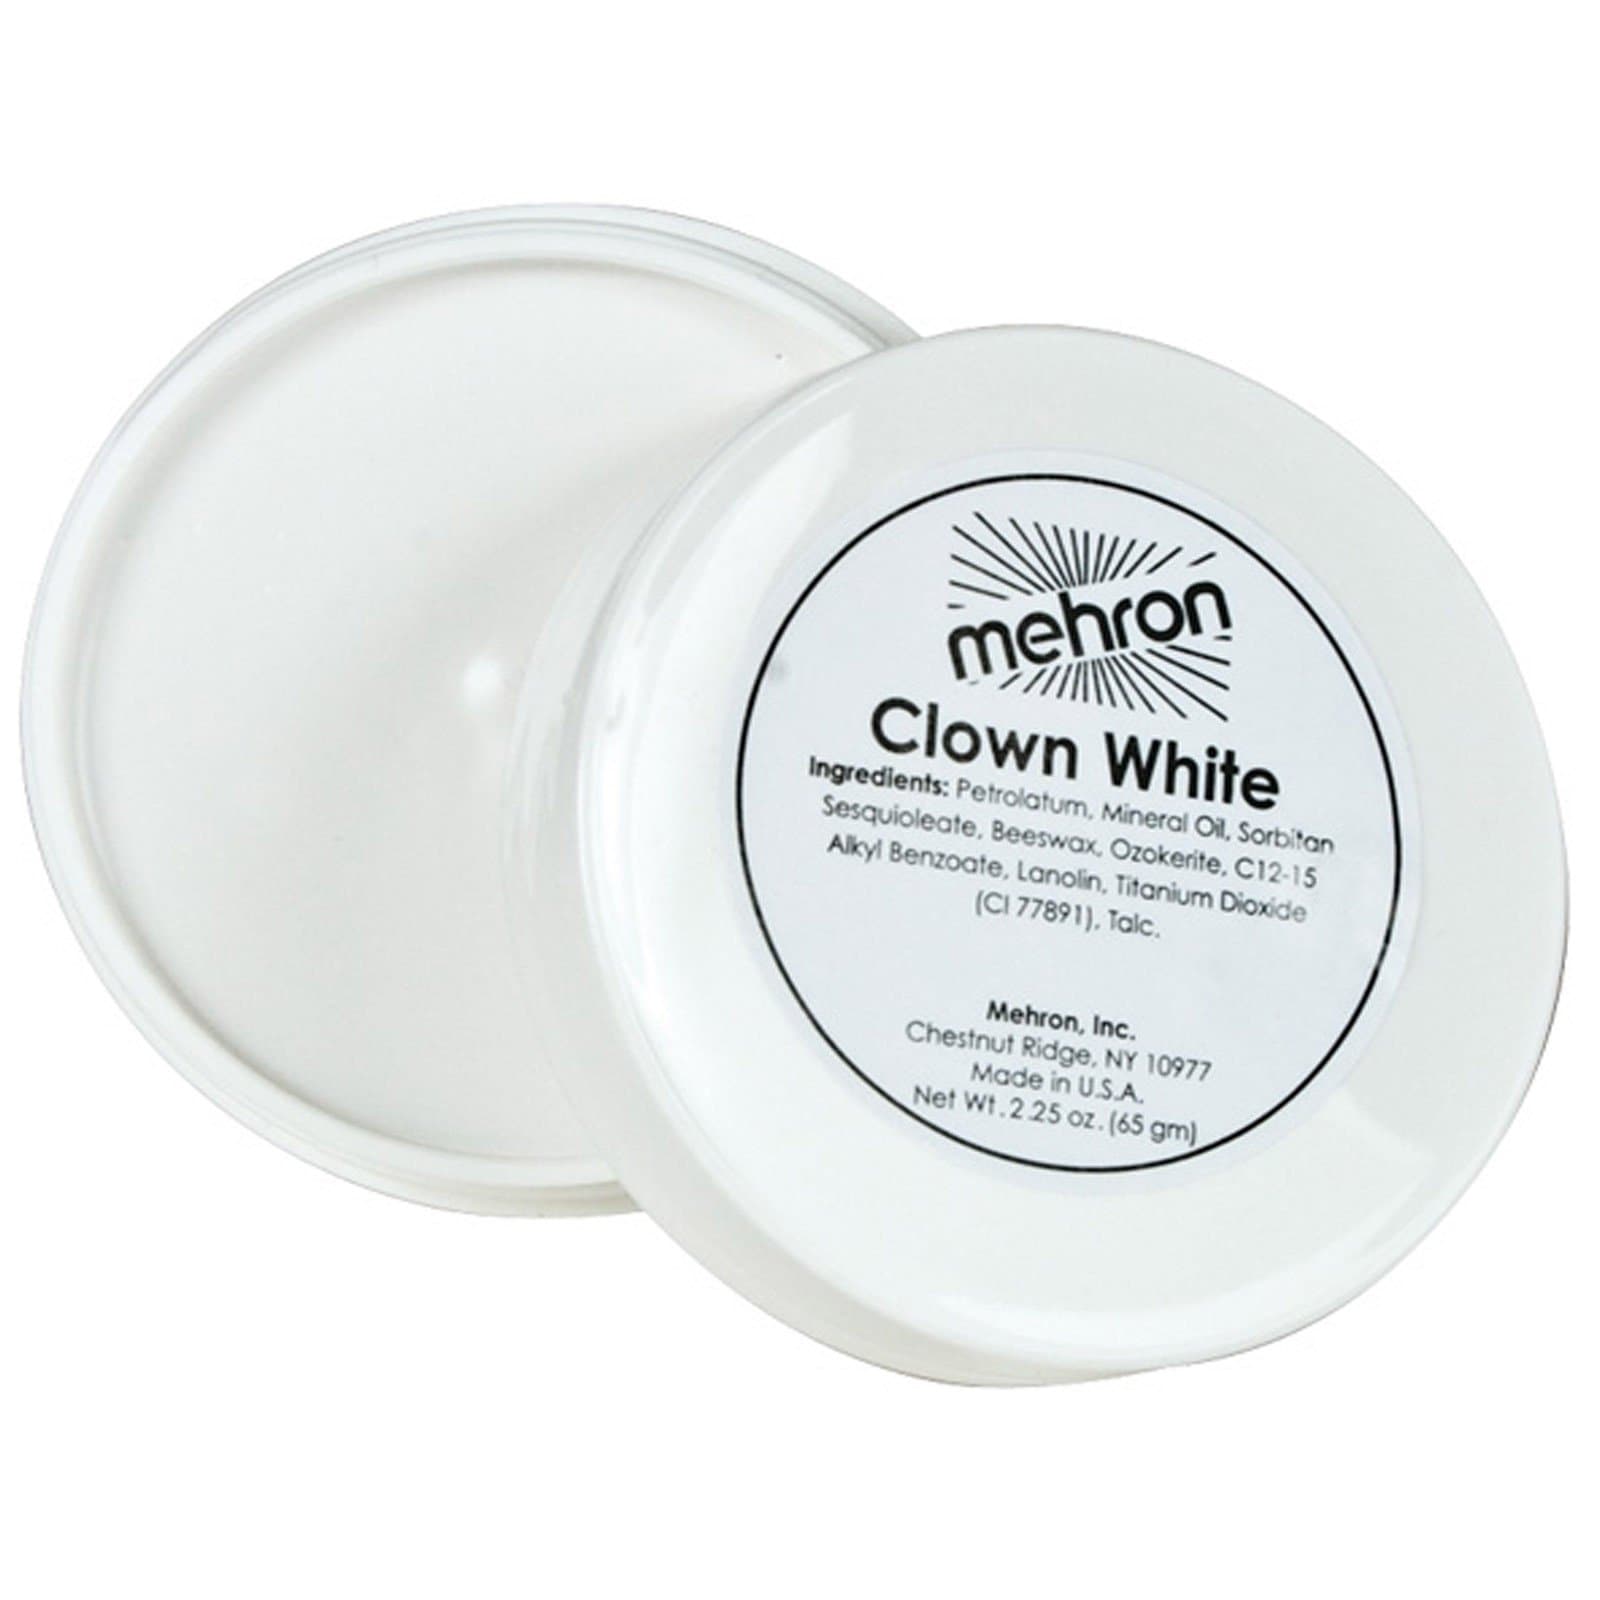 MEHRON CLOWN WHITE